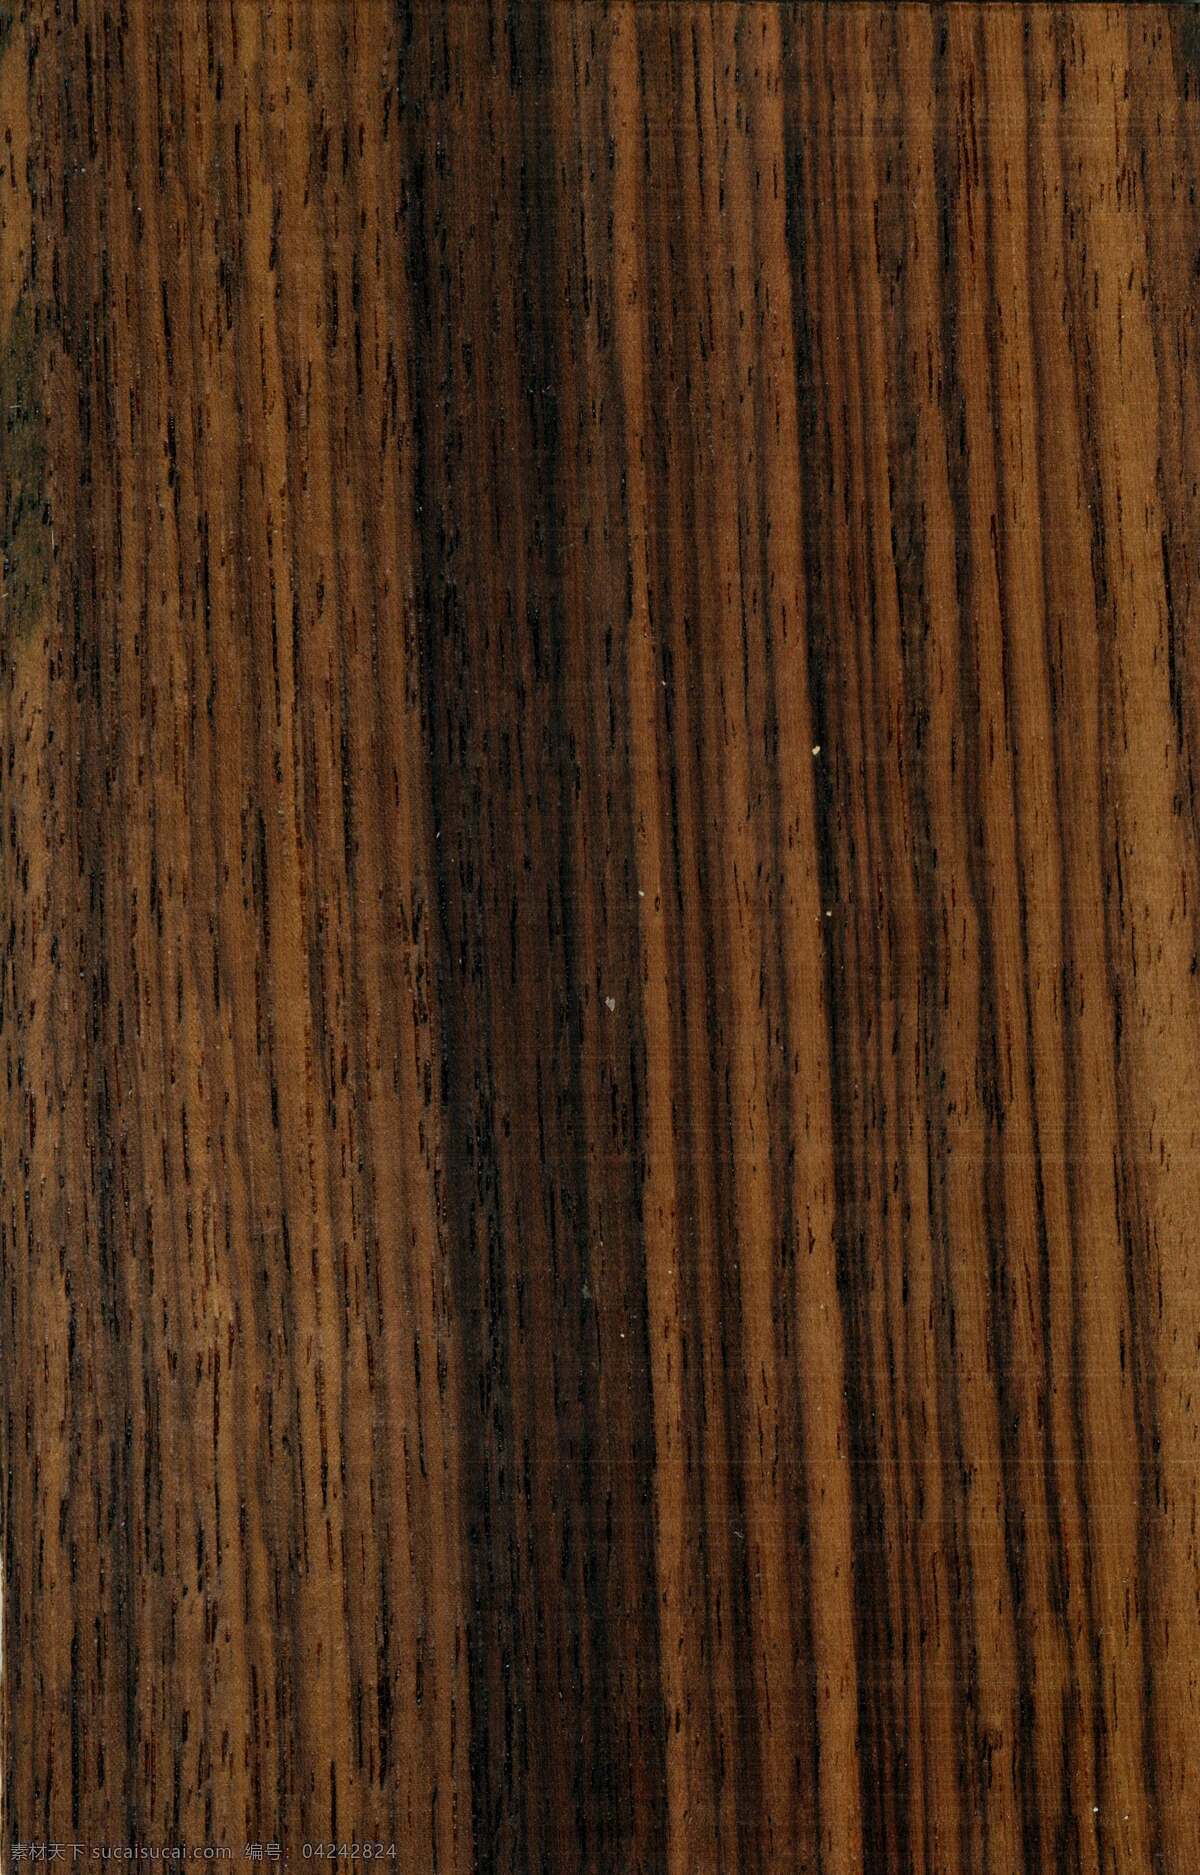 常用 实木 木皮 贴图 高清 木纹 模板下载 高清木纹贴图 实 纸 背景 高档 纹理